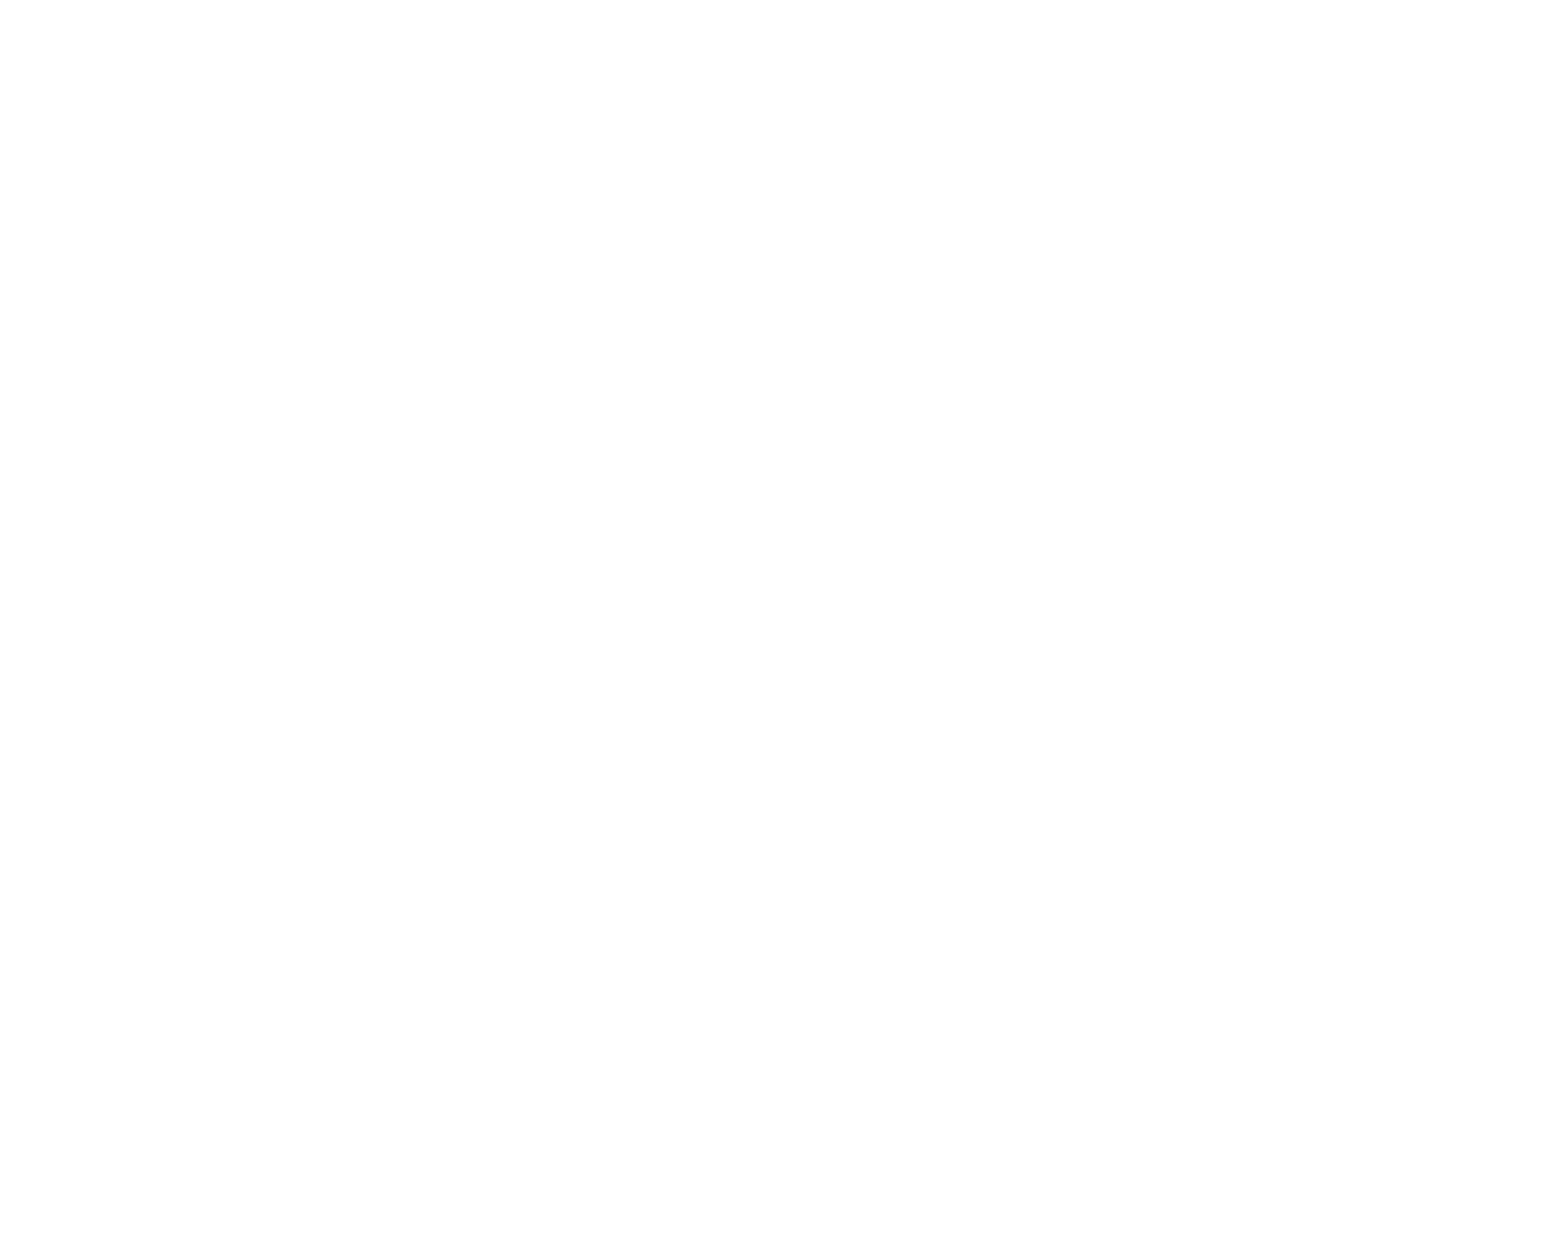 Honda logo for dark backgrounds (transparent PNG)